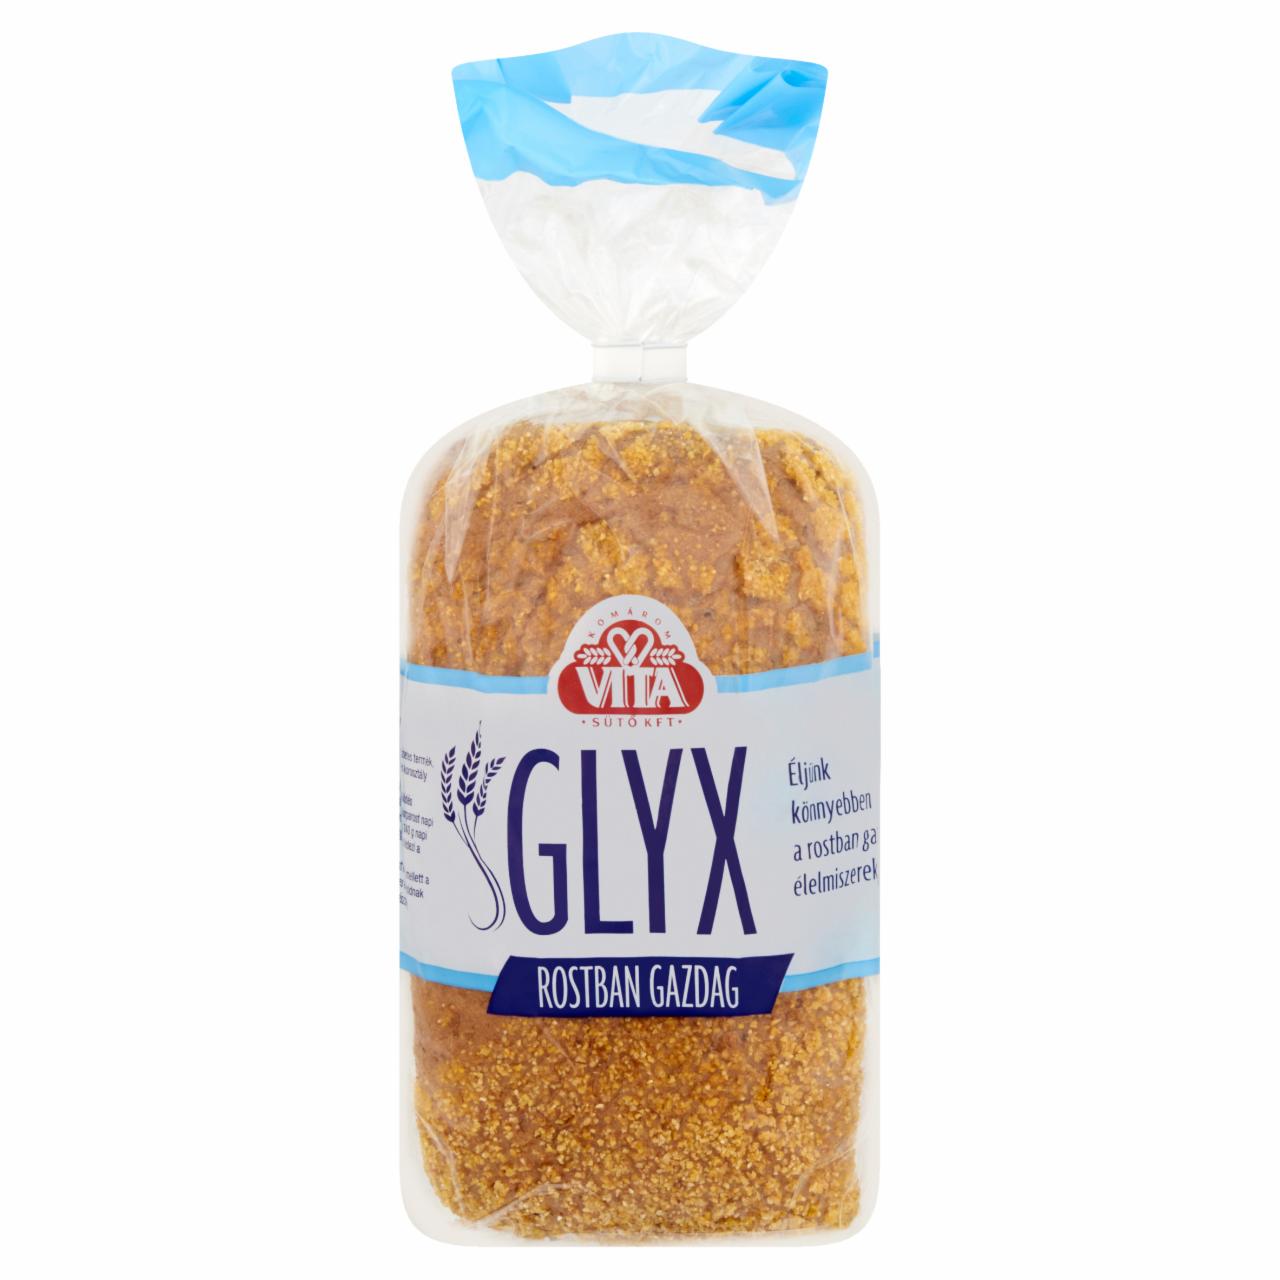 Képek - Vita Glyx rostban gazdag kenyér 500 g